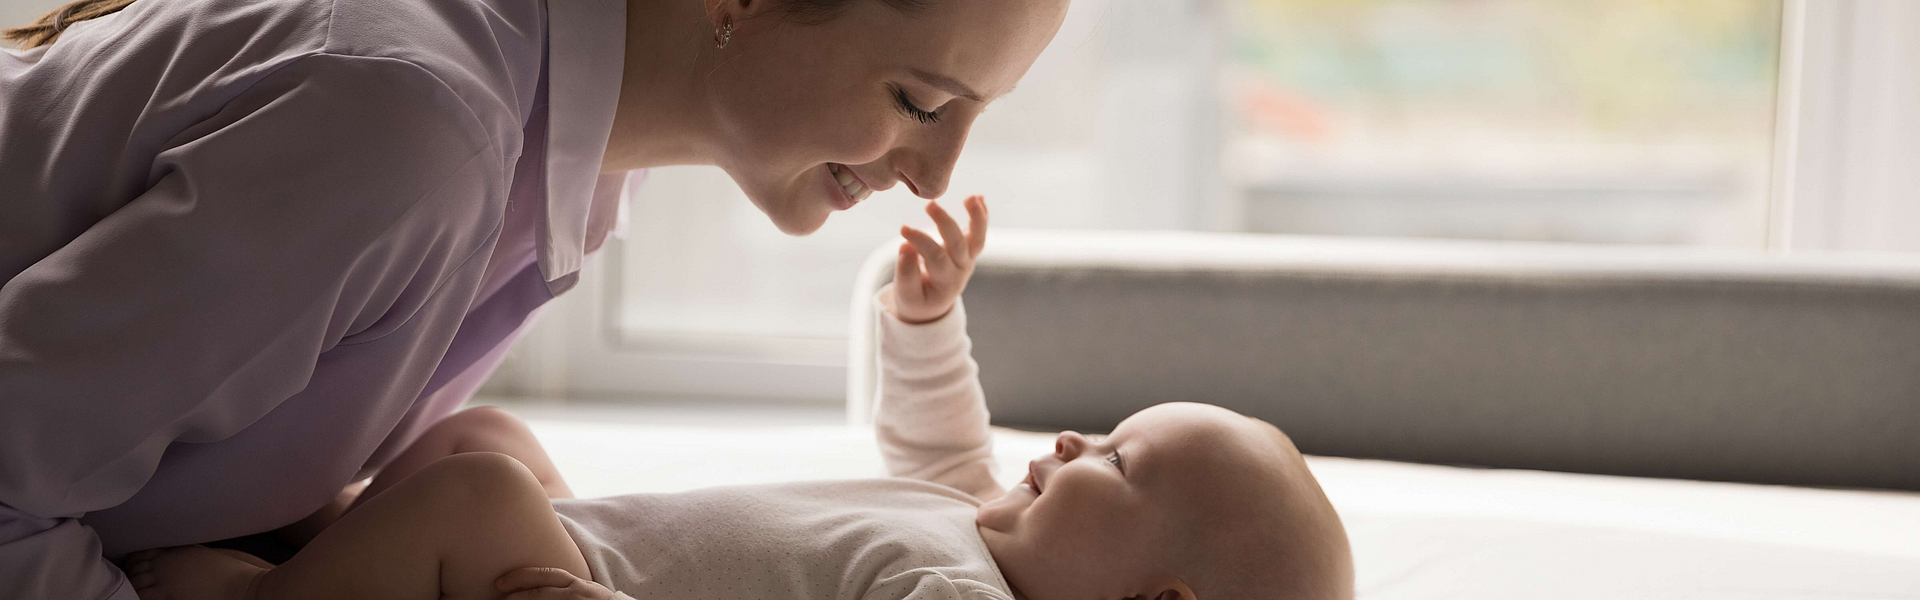 Mutter liebkost ihr Baby die Wirkung des Kuschelhormons Oxytocin stärkt die Bindung